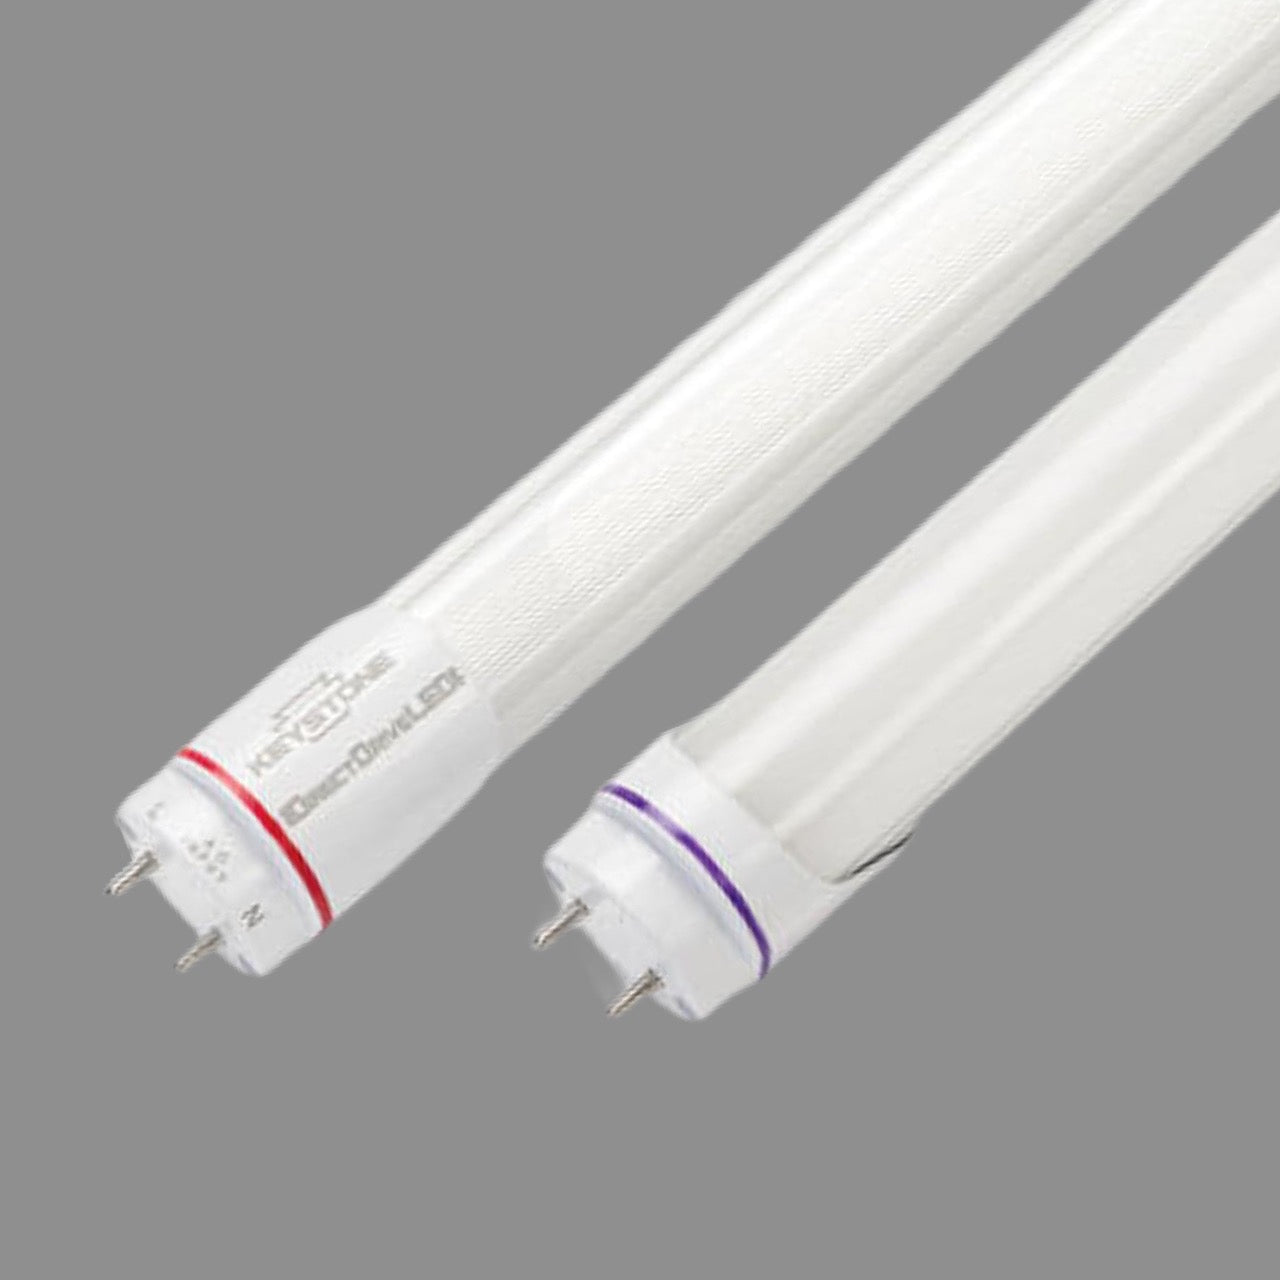 KEYSTONE 20-PACK! LED Light Fixtures 4 ft White KT-LED18T8-48P-840-D-VDIM (New)